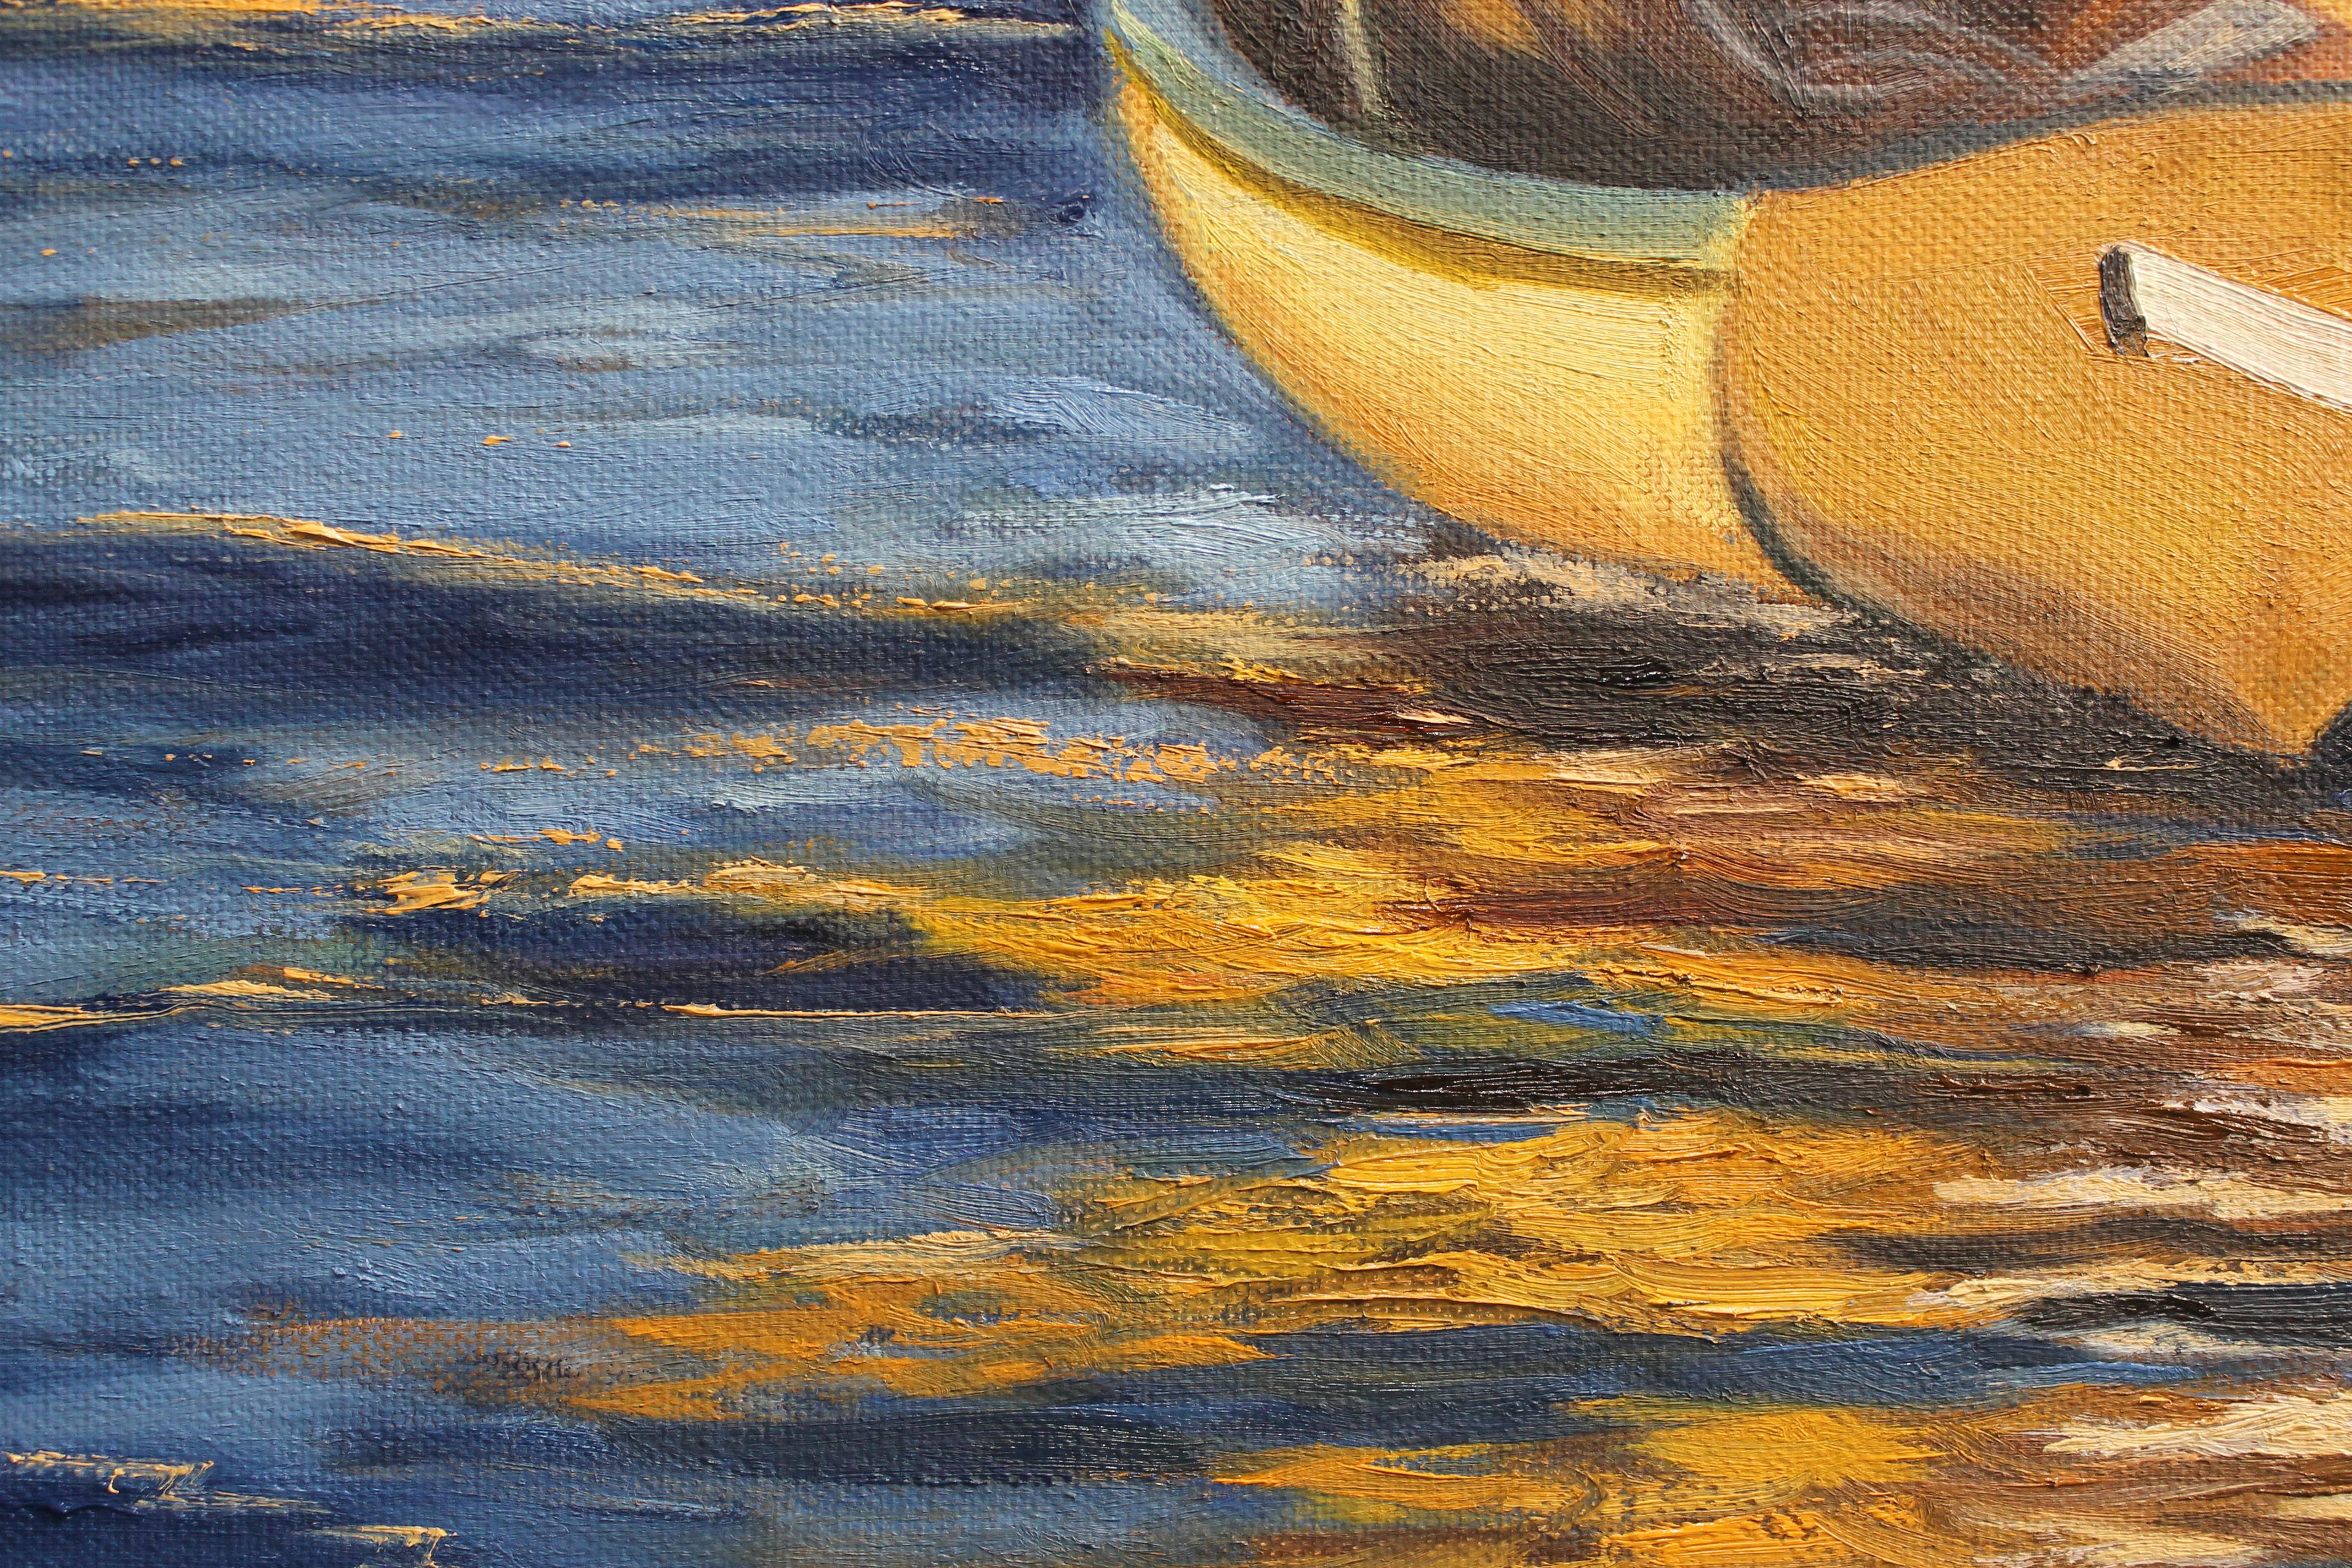 <p>Kommentare des Künstlers<br />Bei diesem Kunstwerk habe ich eine einfache, aber schöne Szene interpretiert, ein Boot im blauen Ozean mit Spiegelungen und Farben.</p><p>Über den Künstler<br />Andres Lopez wurde in der alten kubanischen Stadt Santa